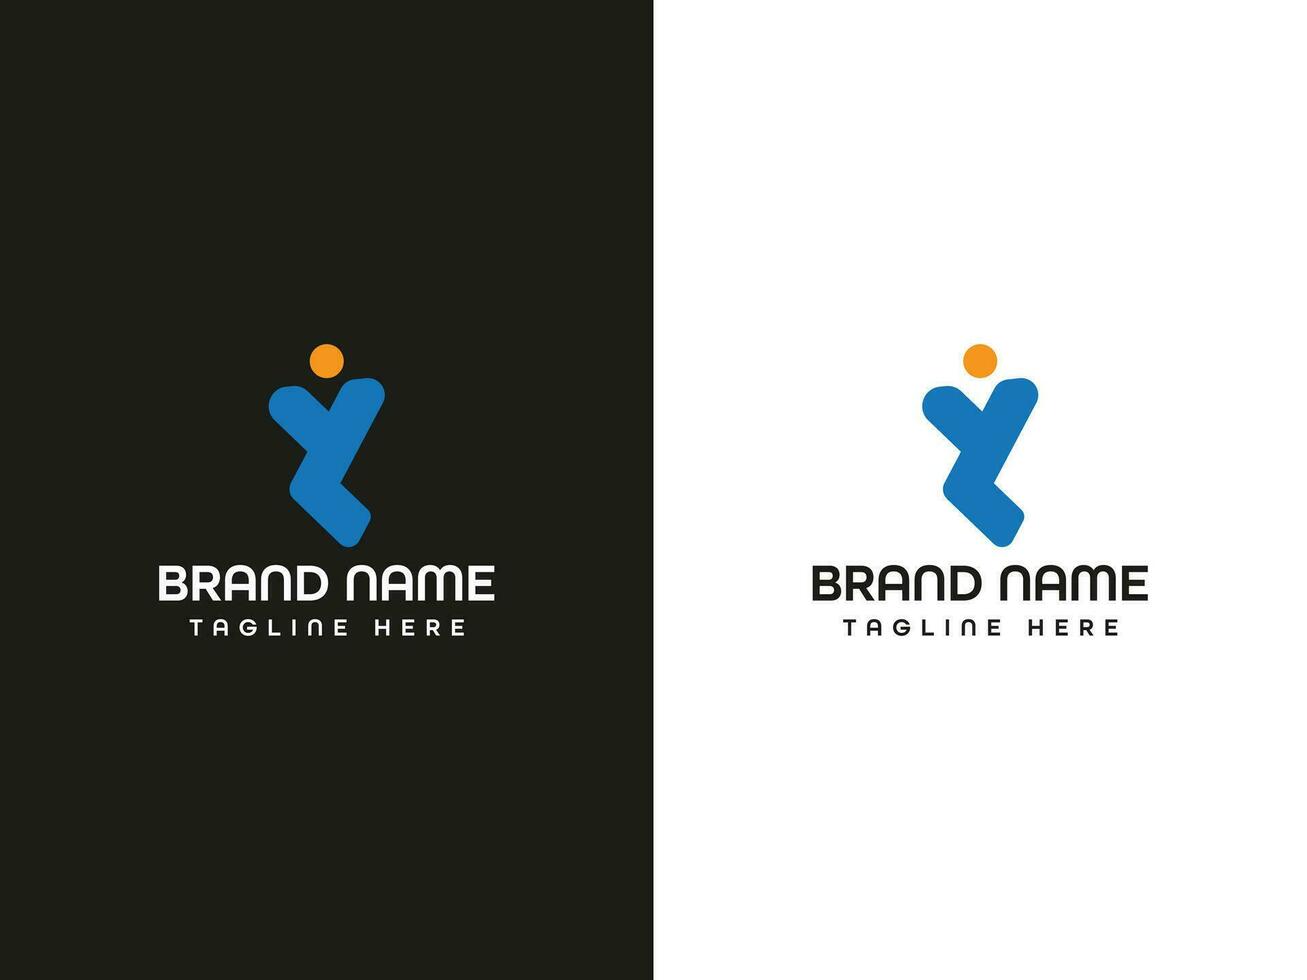 brev logotyp design vektor